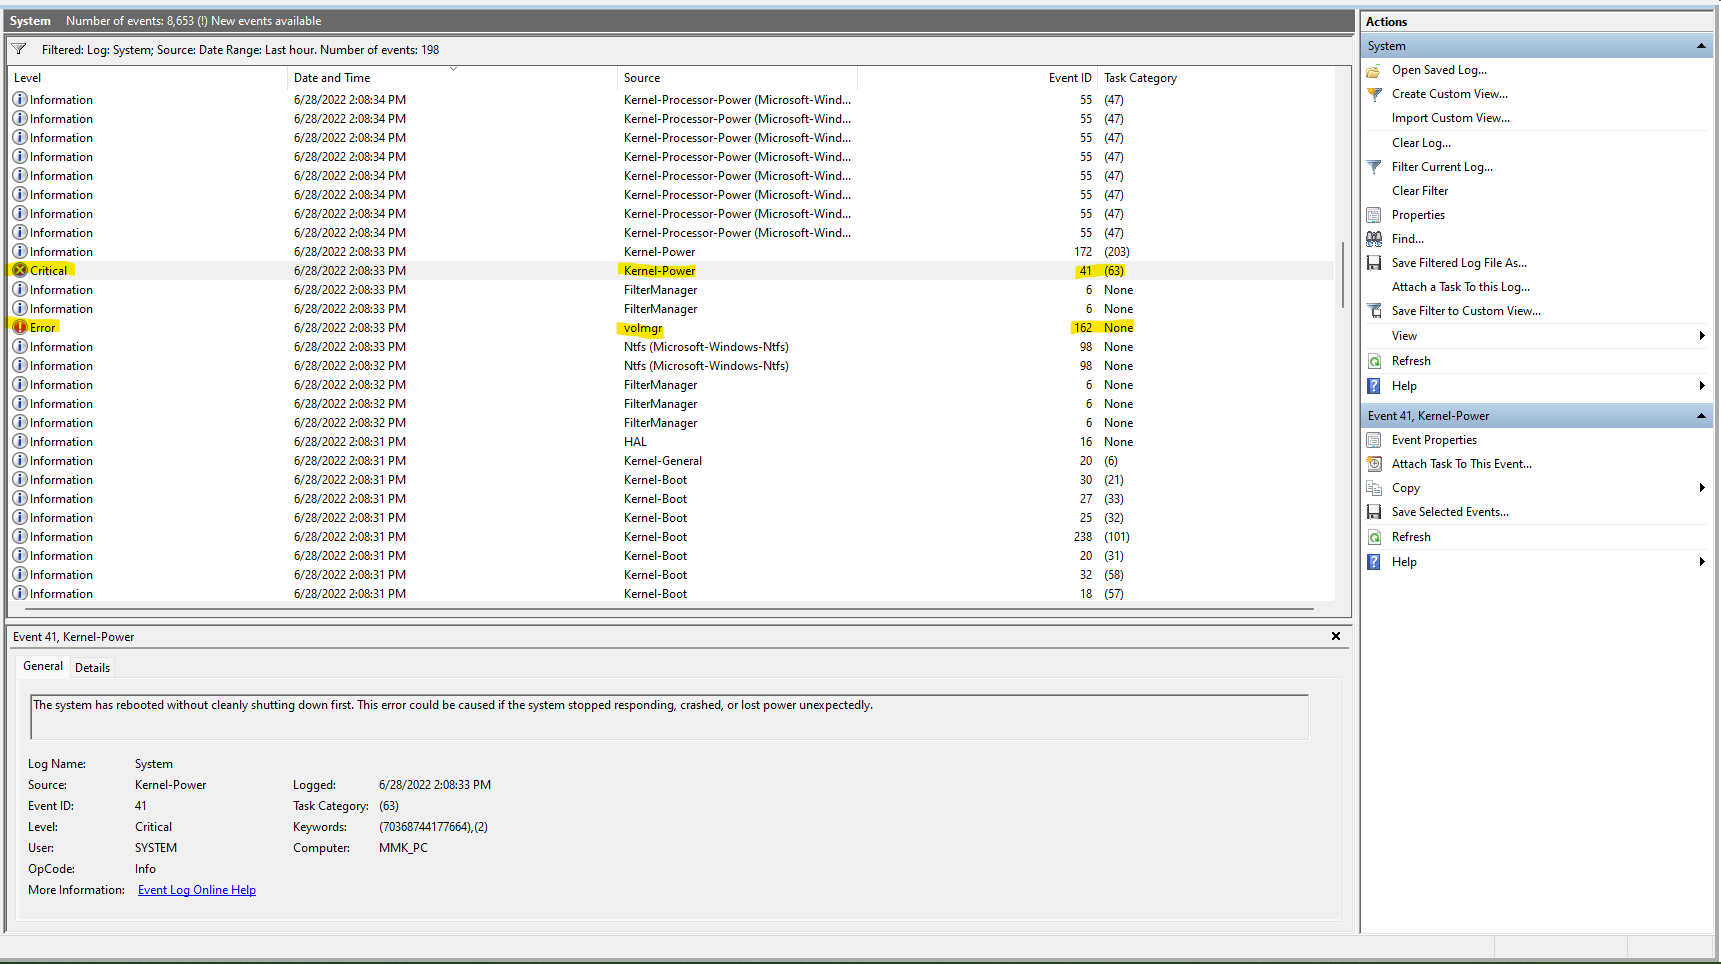 Windows 11 volmgr 162 Kernel-Power 41 BSOD